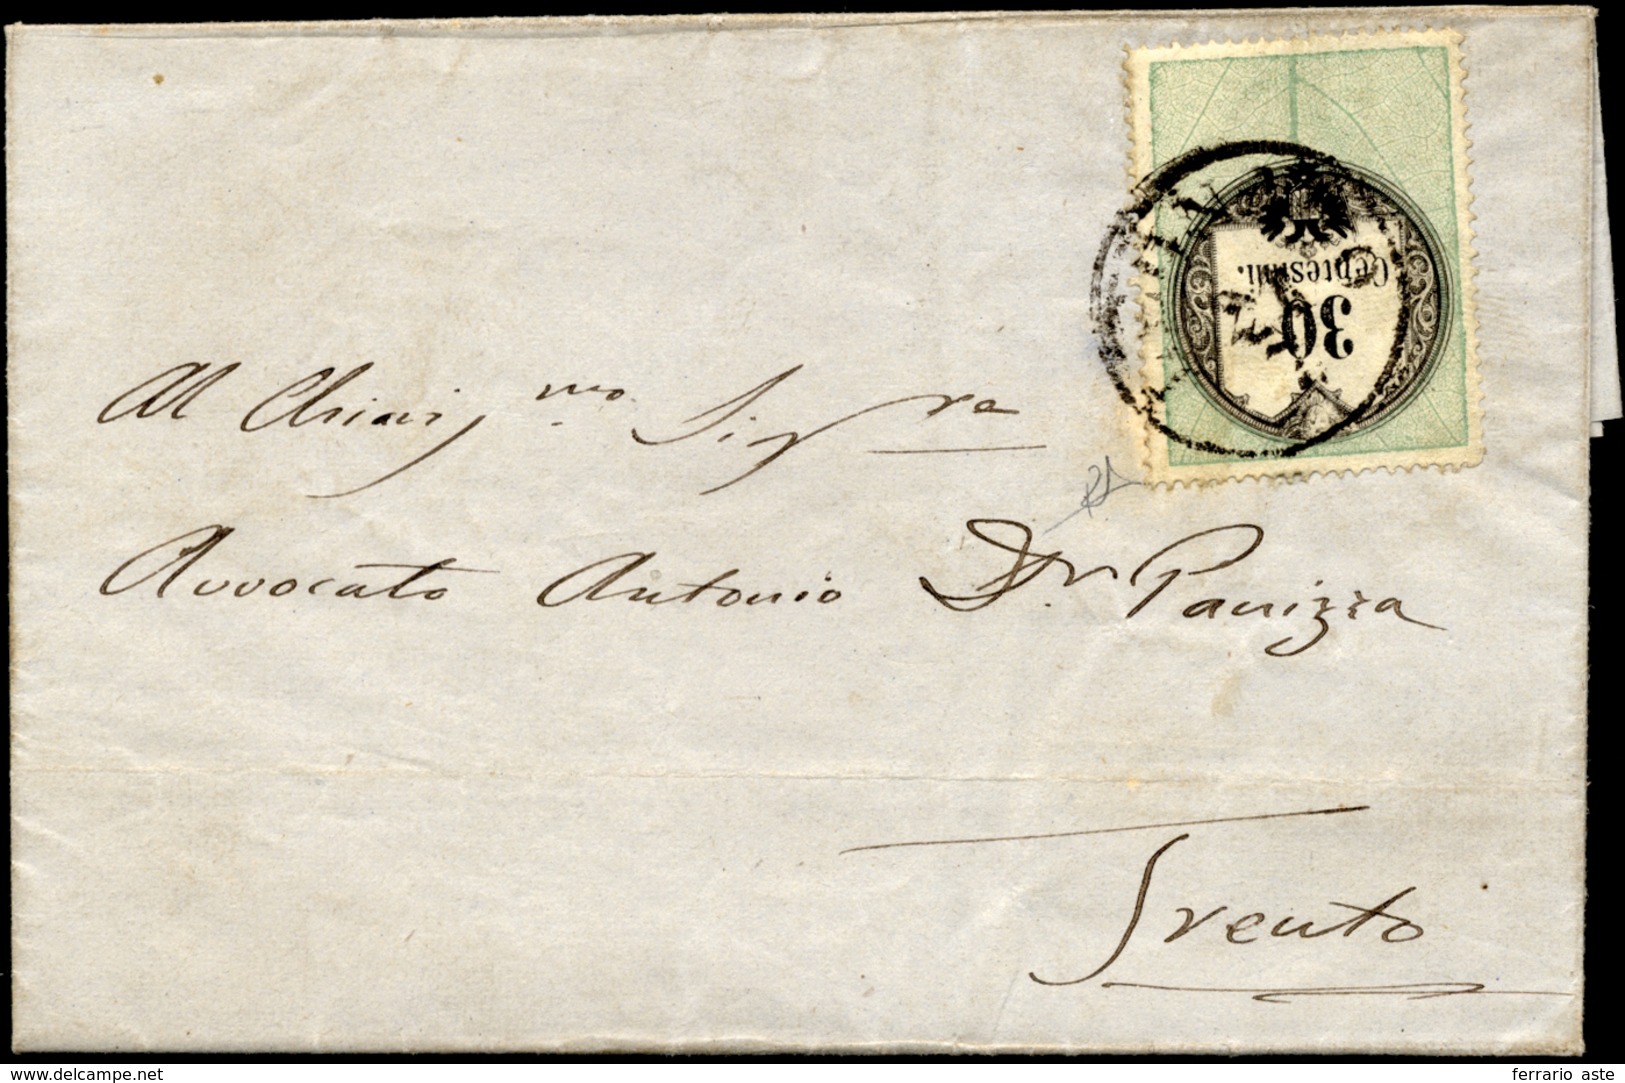 1855 - 30 Cent., Marca Da Bollo Tipografica (4), Perfetta, Su Lettera Da Legnago 20/7/1855 (punti 5)... - Lombardije-Venetië